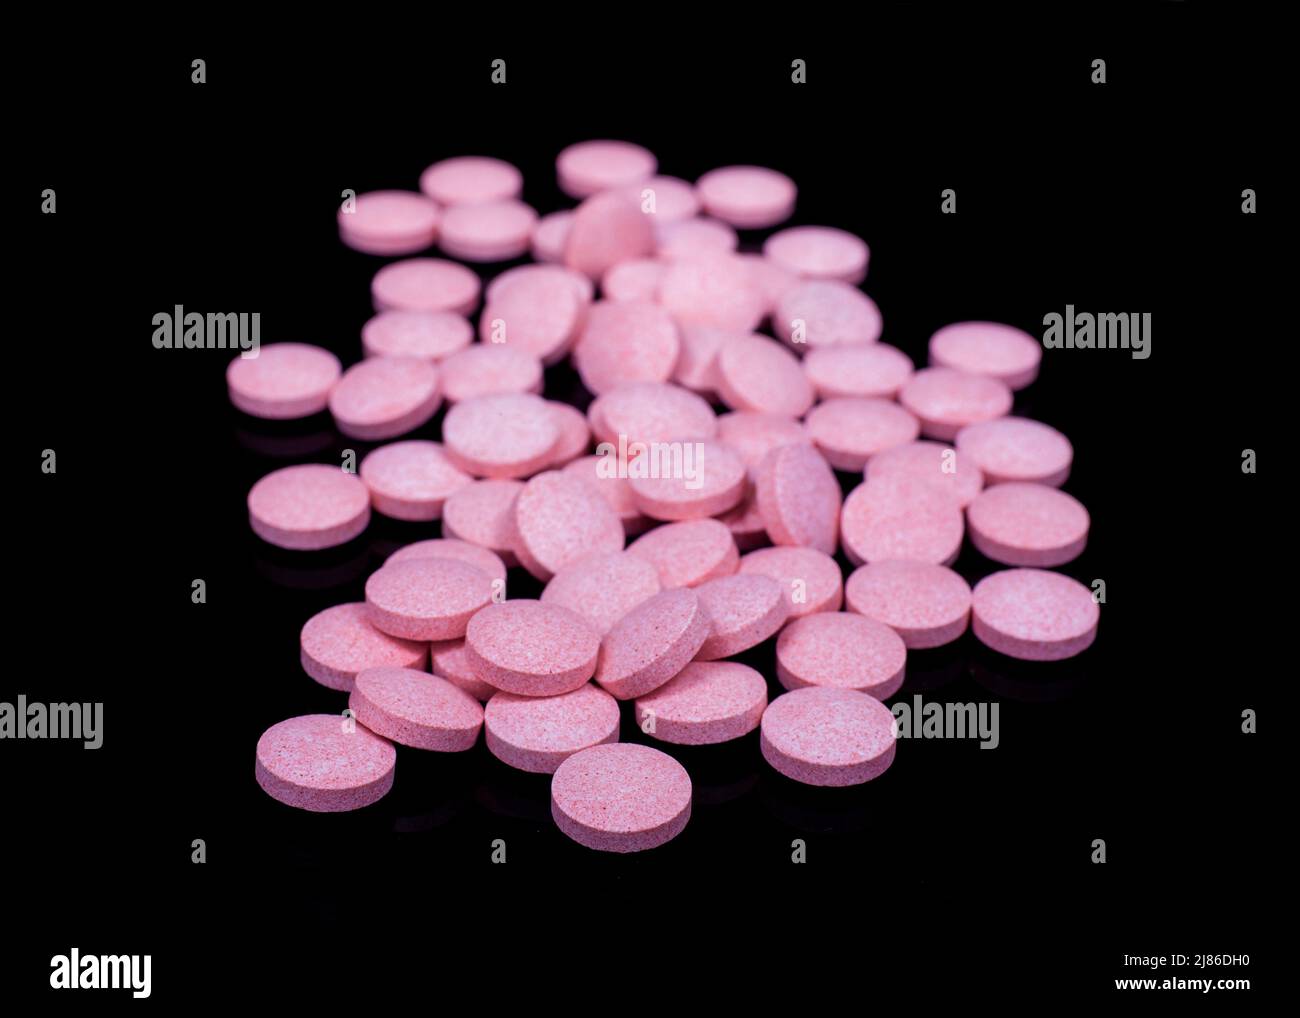 Pilules roses sur surface noire réfléchissante Banque D'Images